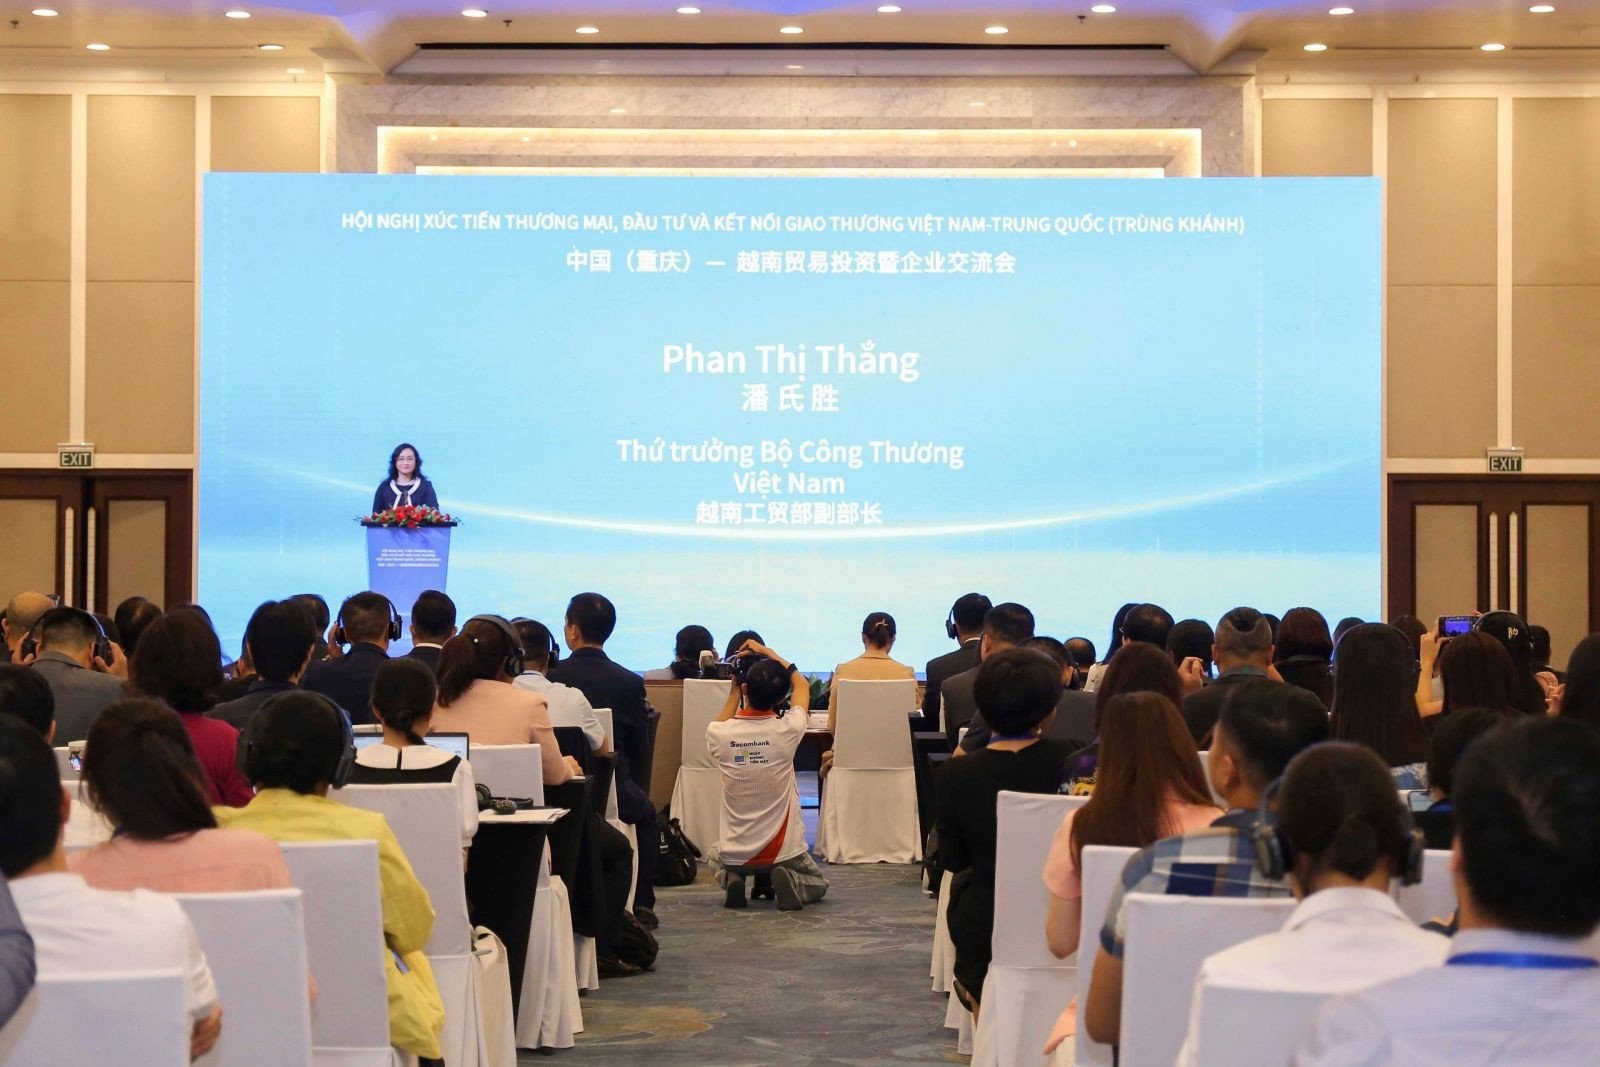 Thứ trưởng Phan Thị Thắng tiếp xã giao Phó Thị trưởng thành phố Trùng Khánh, Trung Quốc và dự Hội nghị xúc tiến thương mại, đầu tư và kết nối giao thương Việt Nam – Trung Quốc (Trùng Khánh) năm 2023